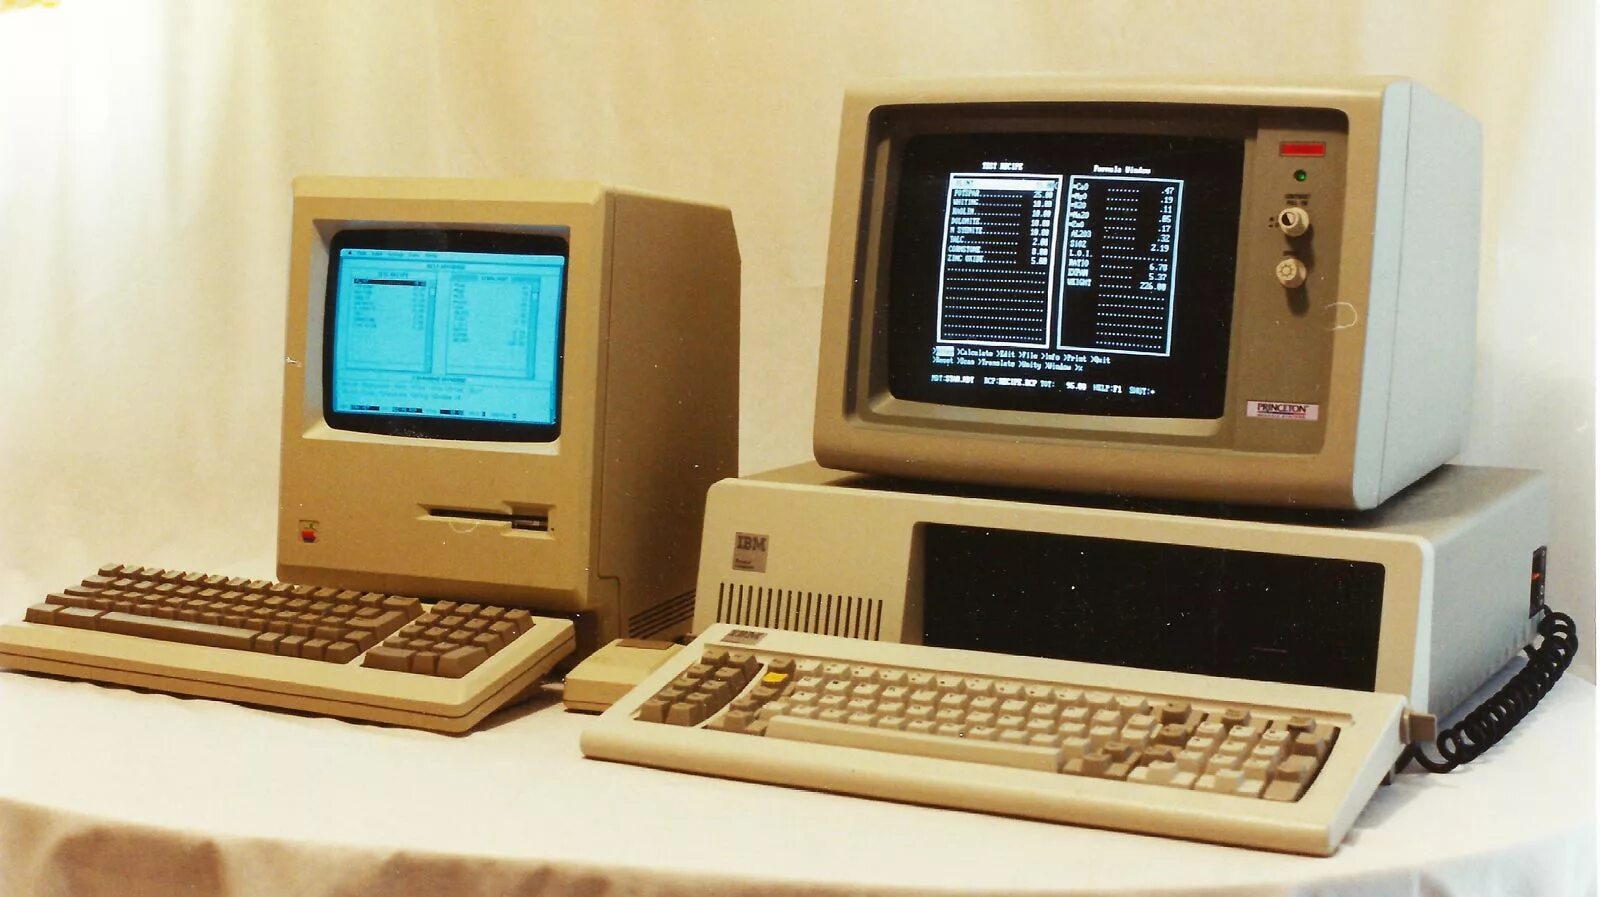 Поколение ibm. Четвертое поколение ЭВМ IBM PC. ЭВМ 4 поколения Apple 1. Macintosh 128k. Компьютеры IBM 80-Х.